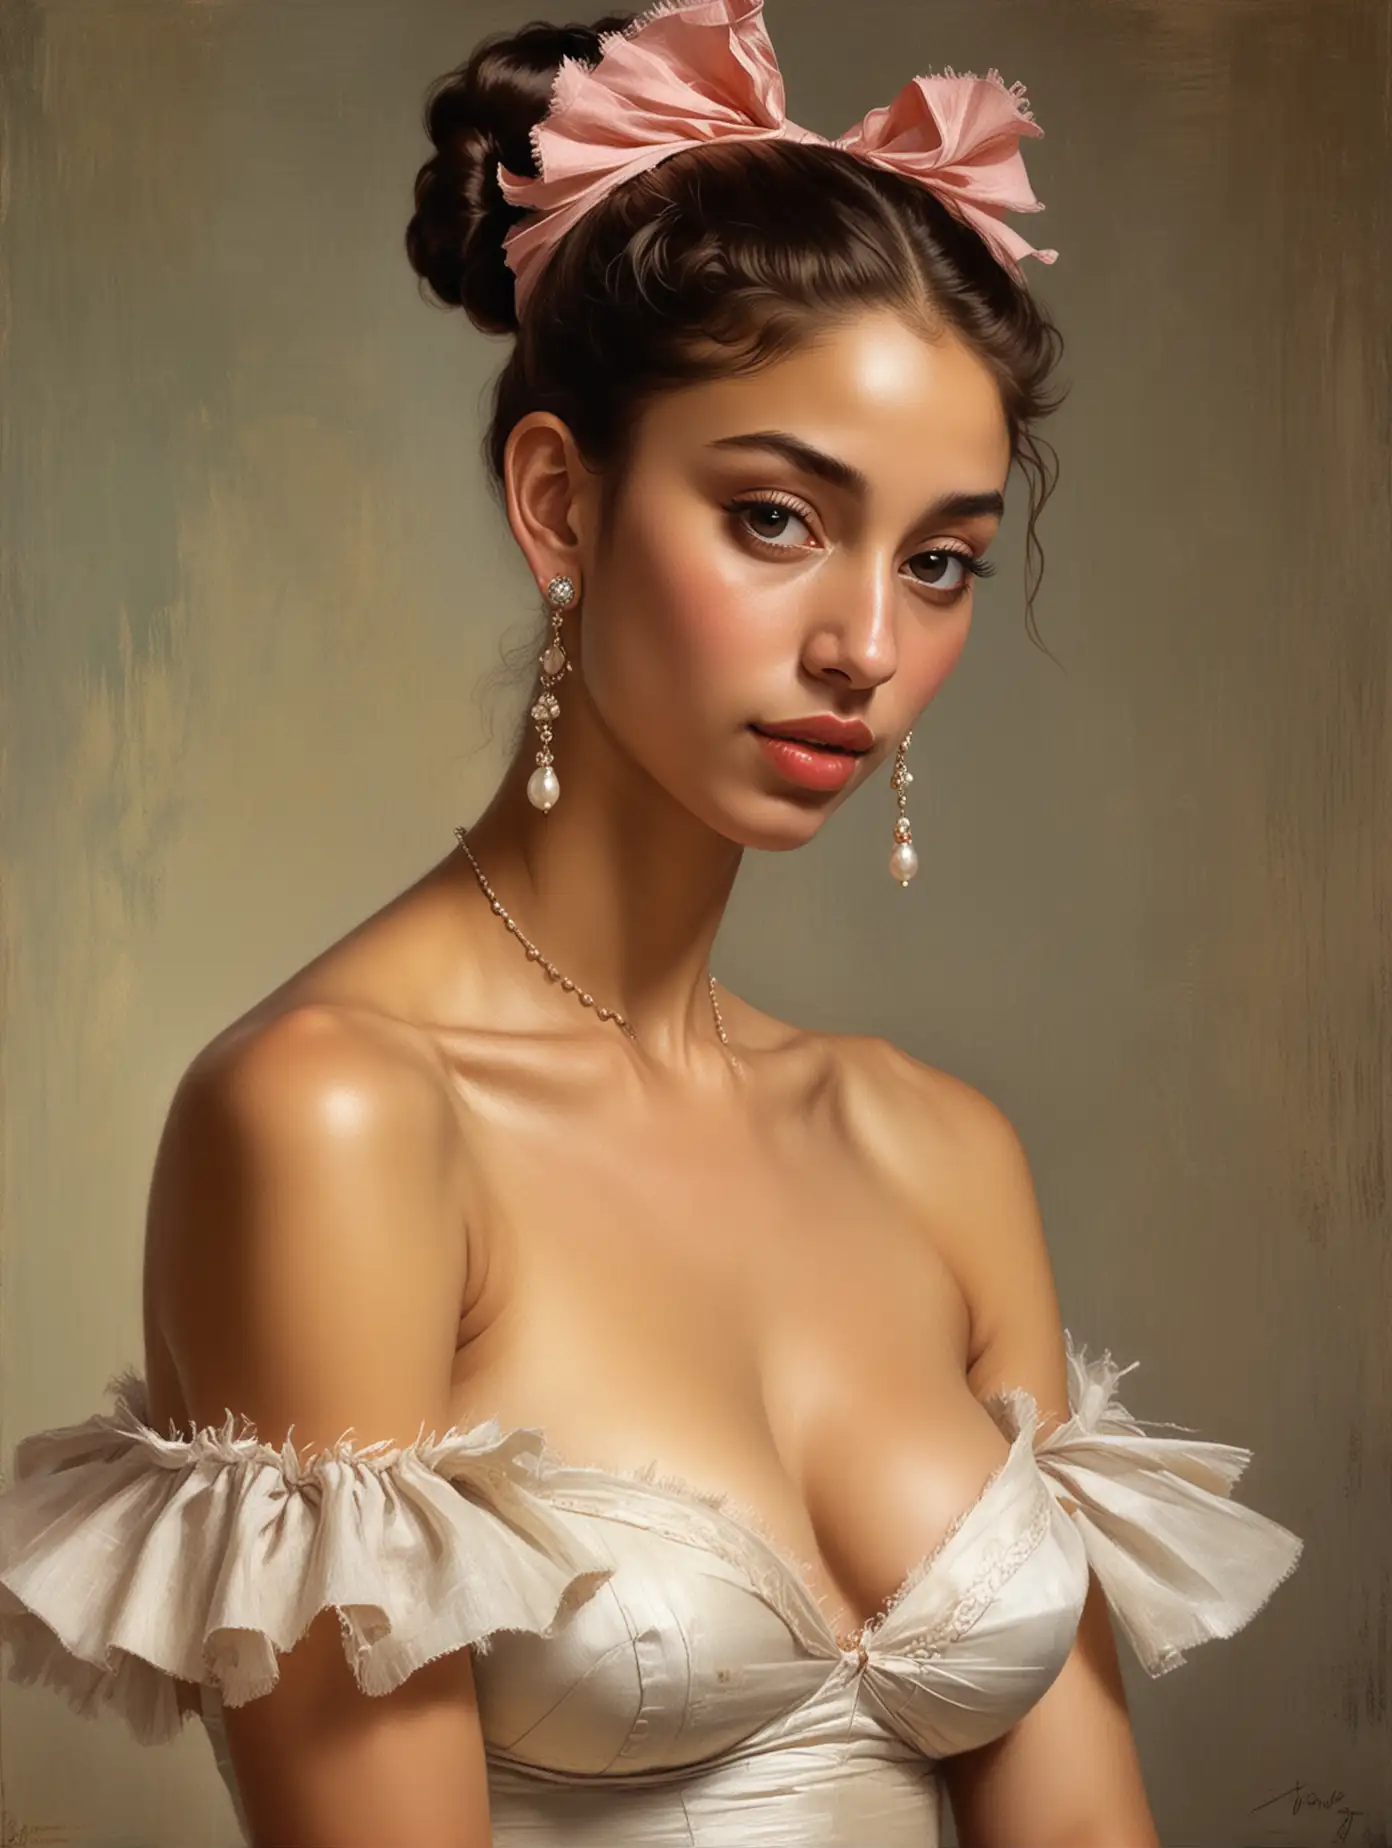 Detailed-Digital-Art-Flamenco-Dancing-Dominican-Princess-in-Bikini